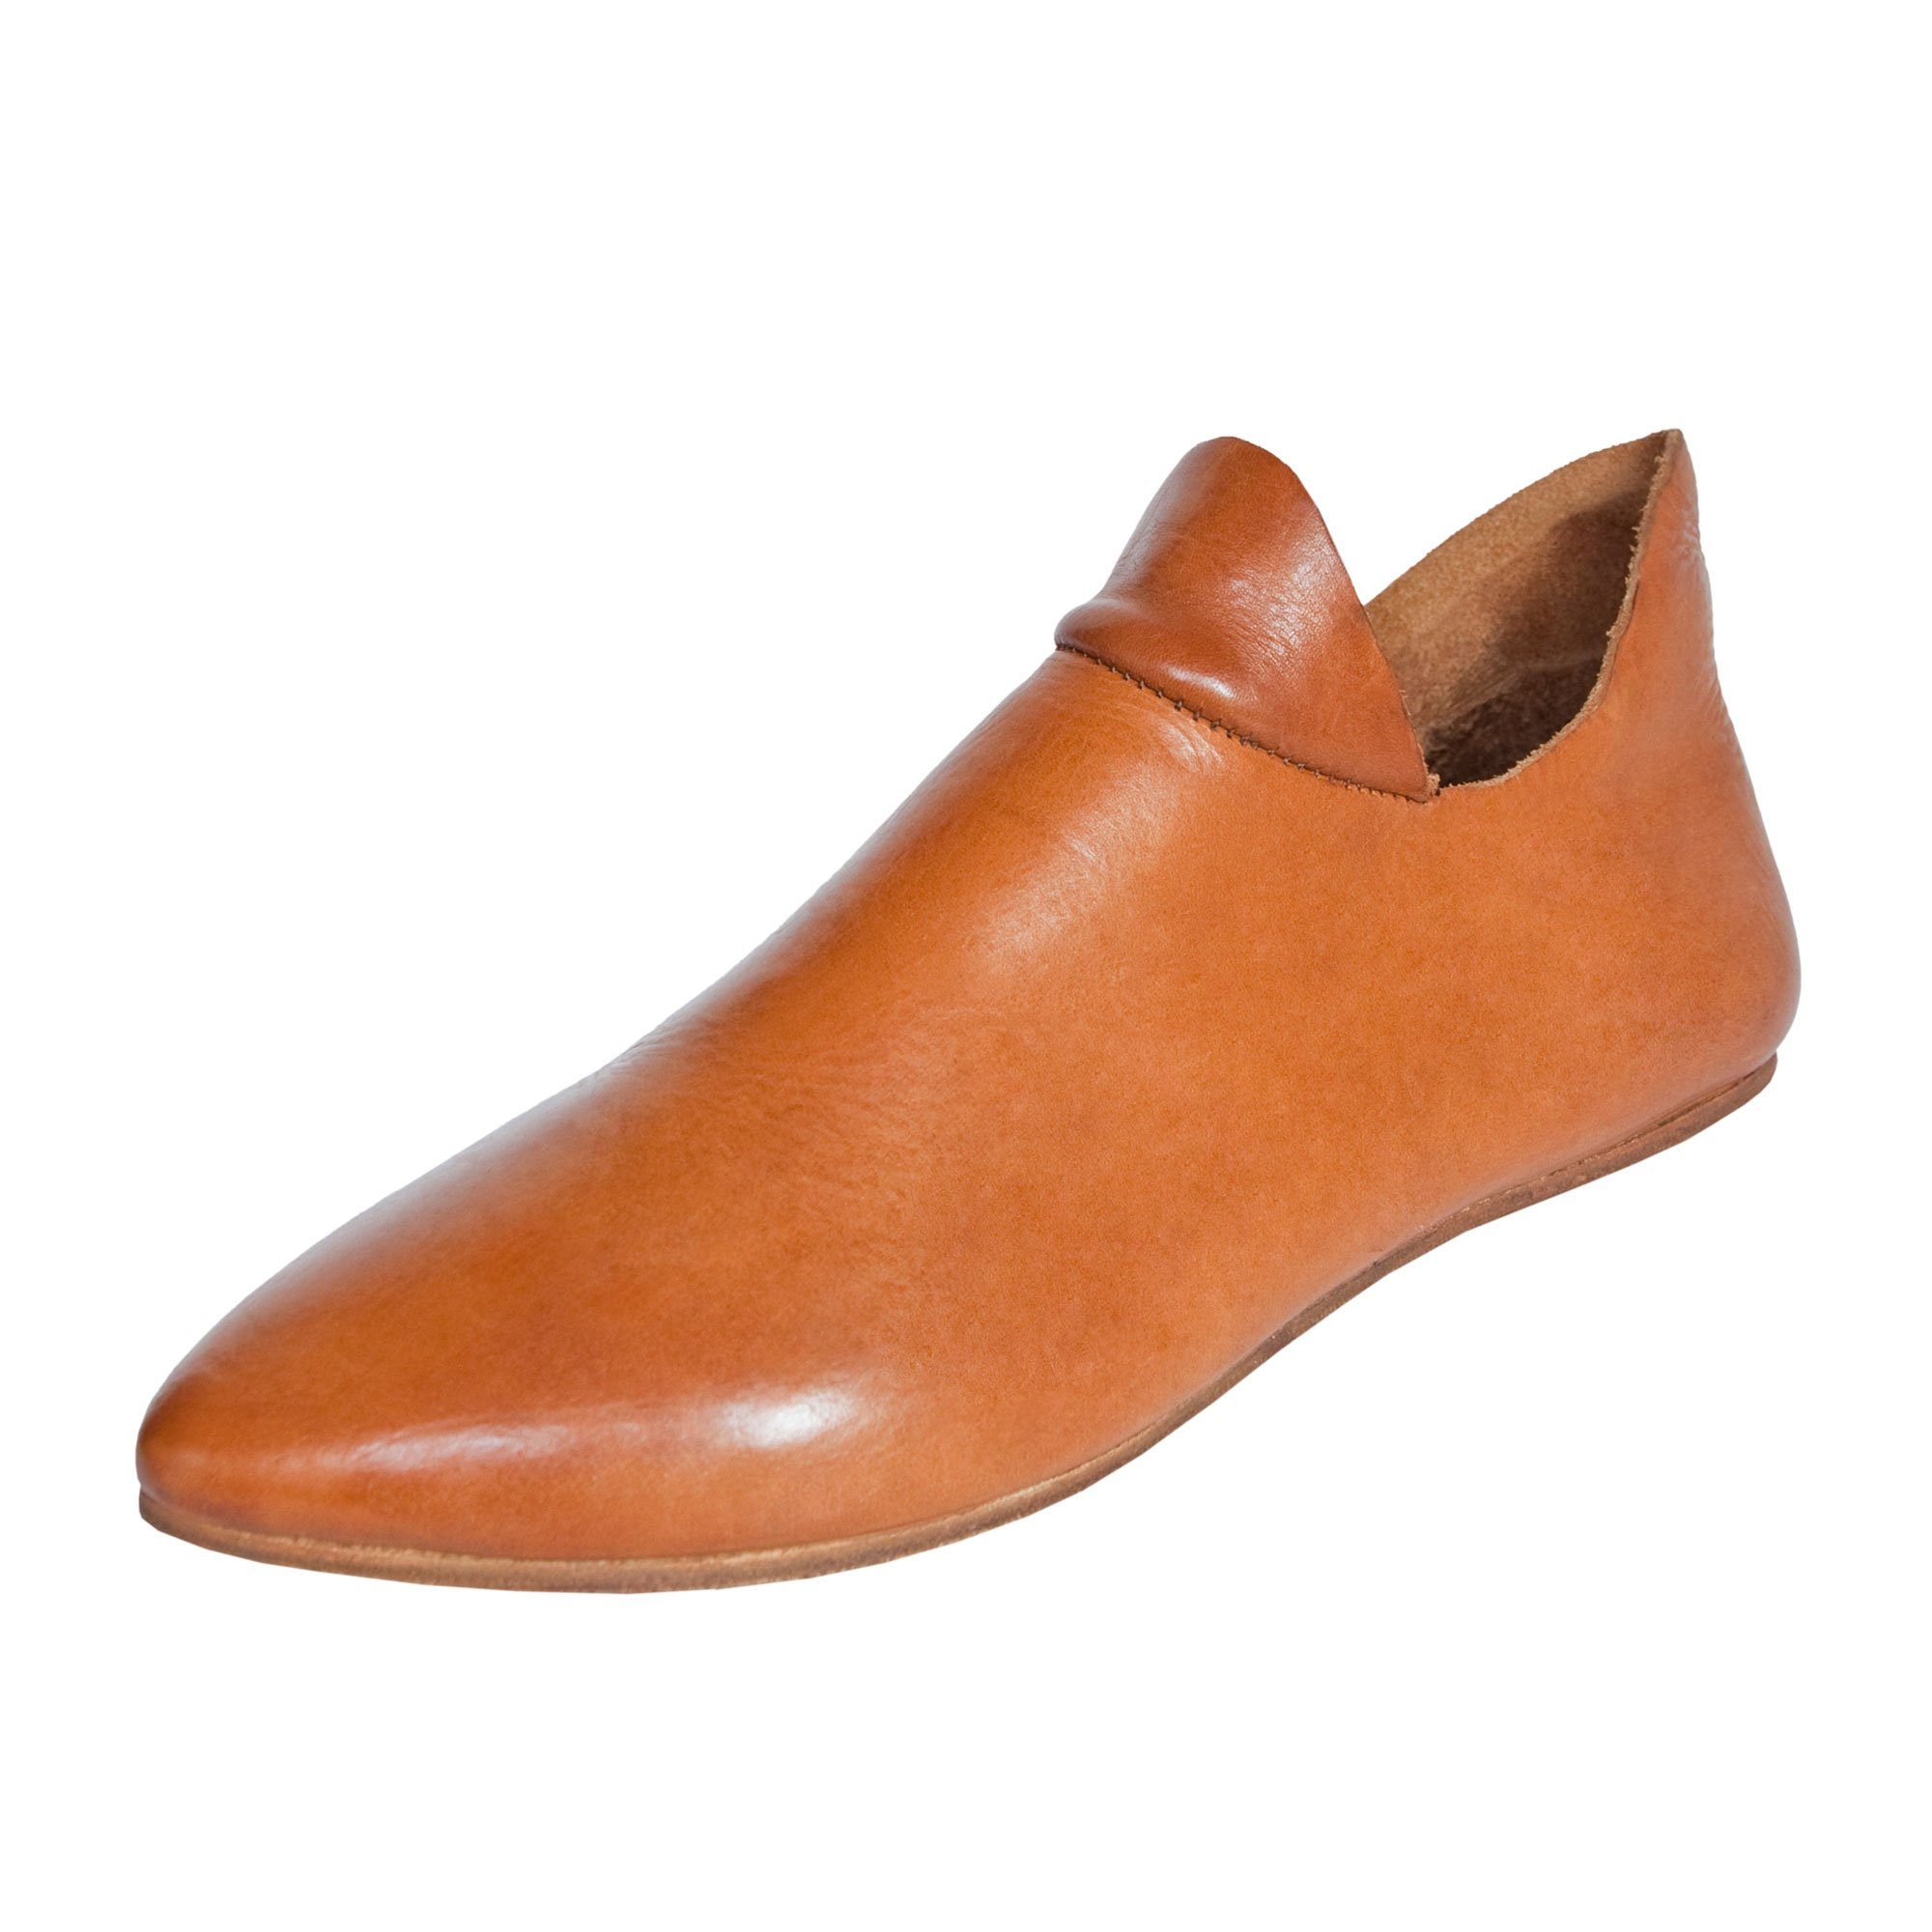 Schuhe Klassische Stiefel Vehi Mercatus Spätmittelalterliche Halbschuhe 15. Jahrhundert Stiefel